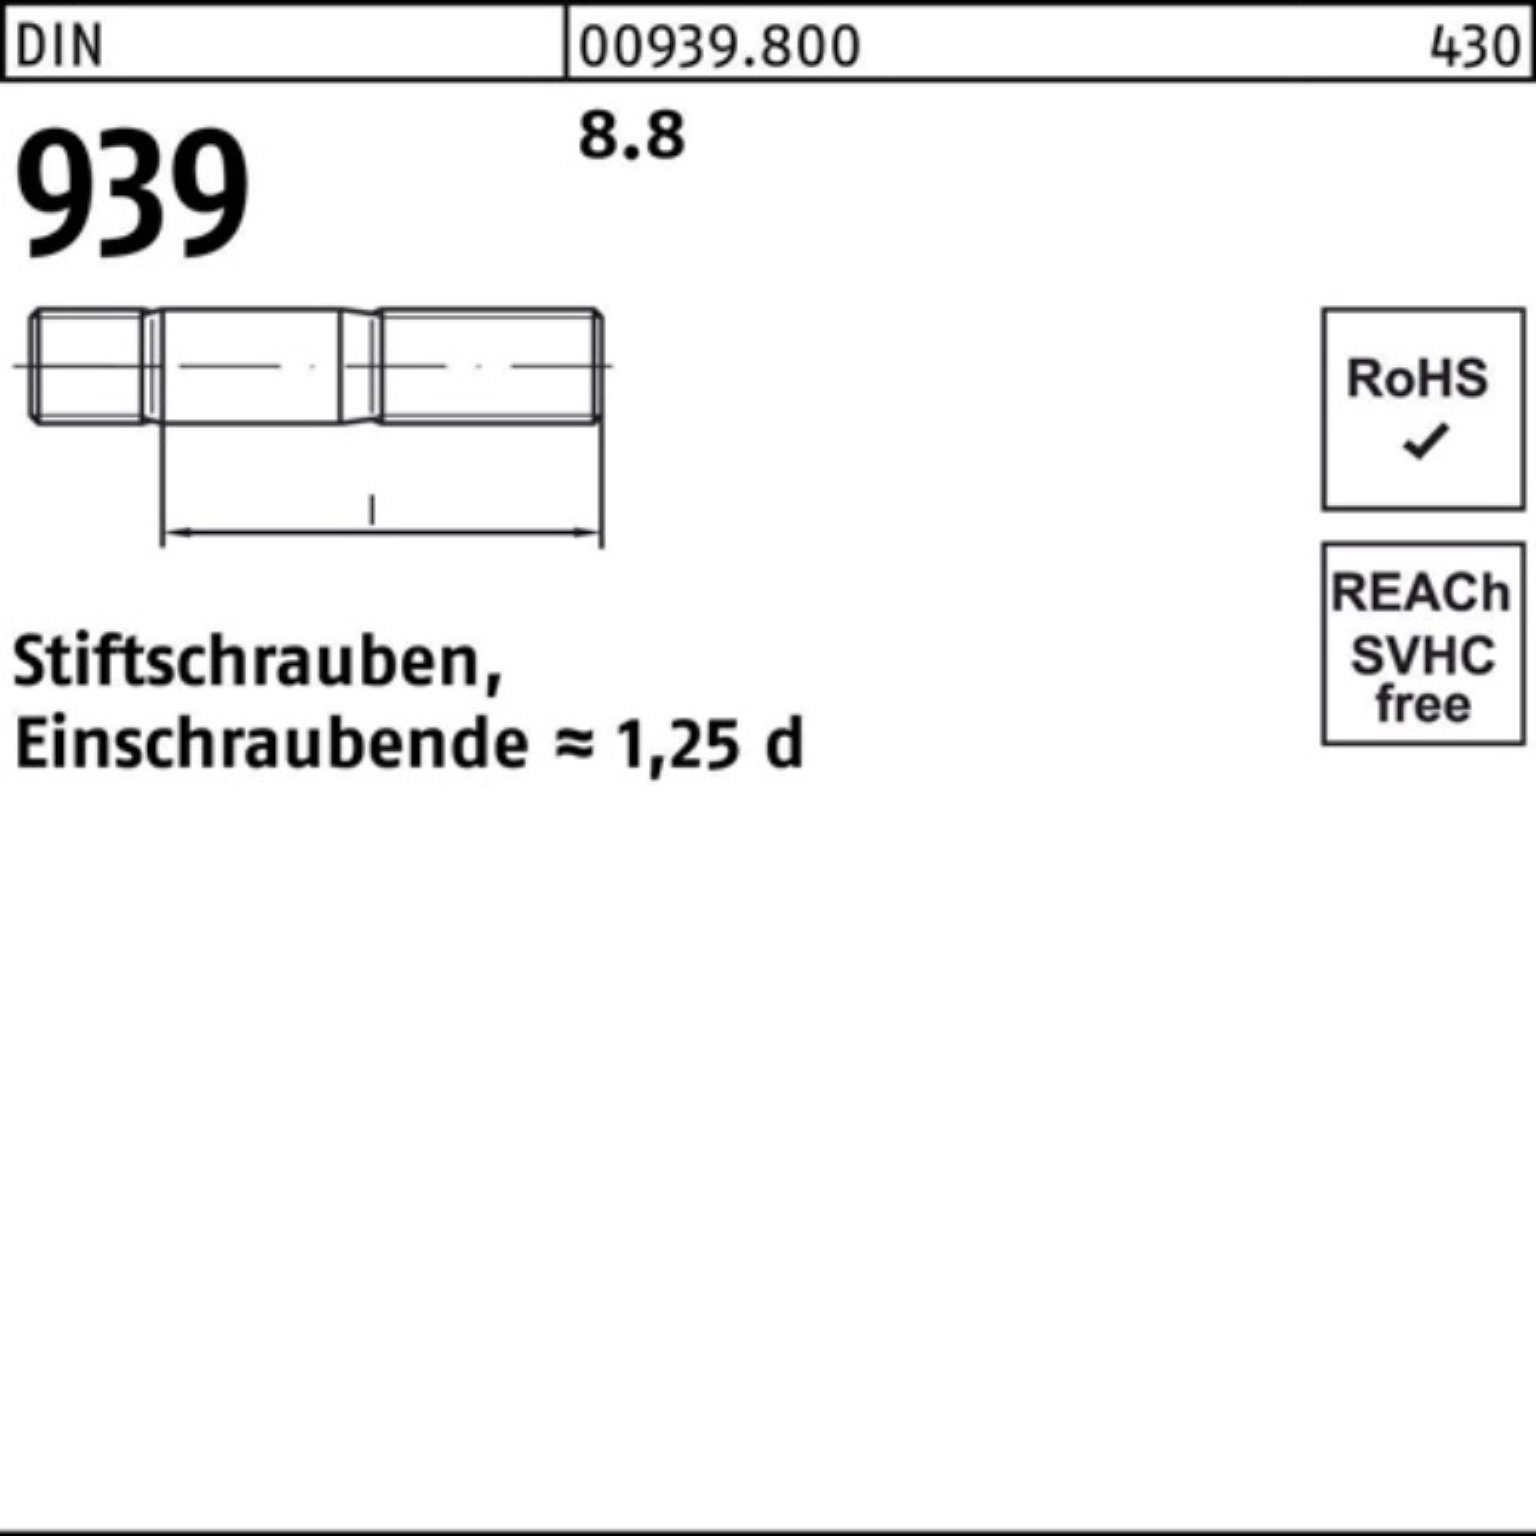 M16x Stiftschraube 10 Reyher Pack S 75 8.8 DIN 100er Stiftschraube Einschraubende=1,25d 939